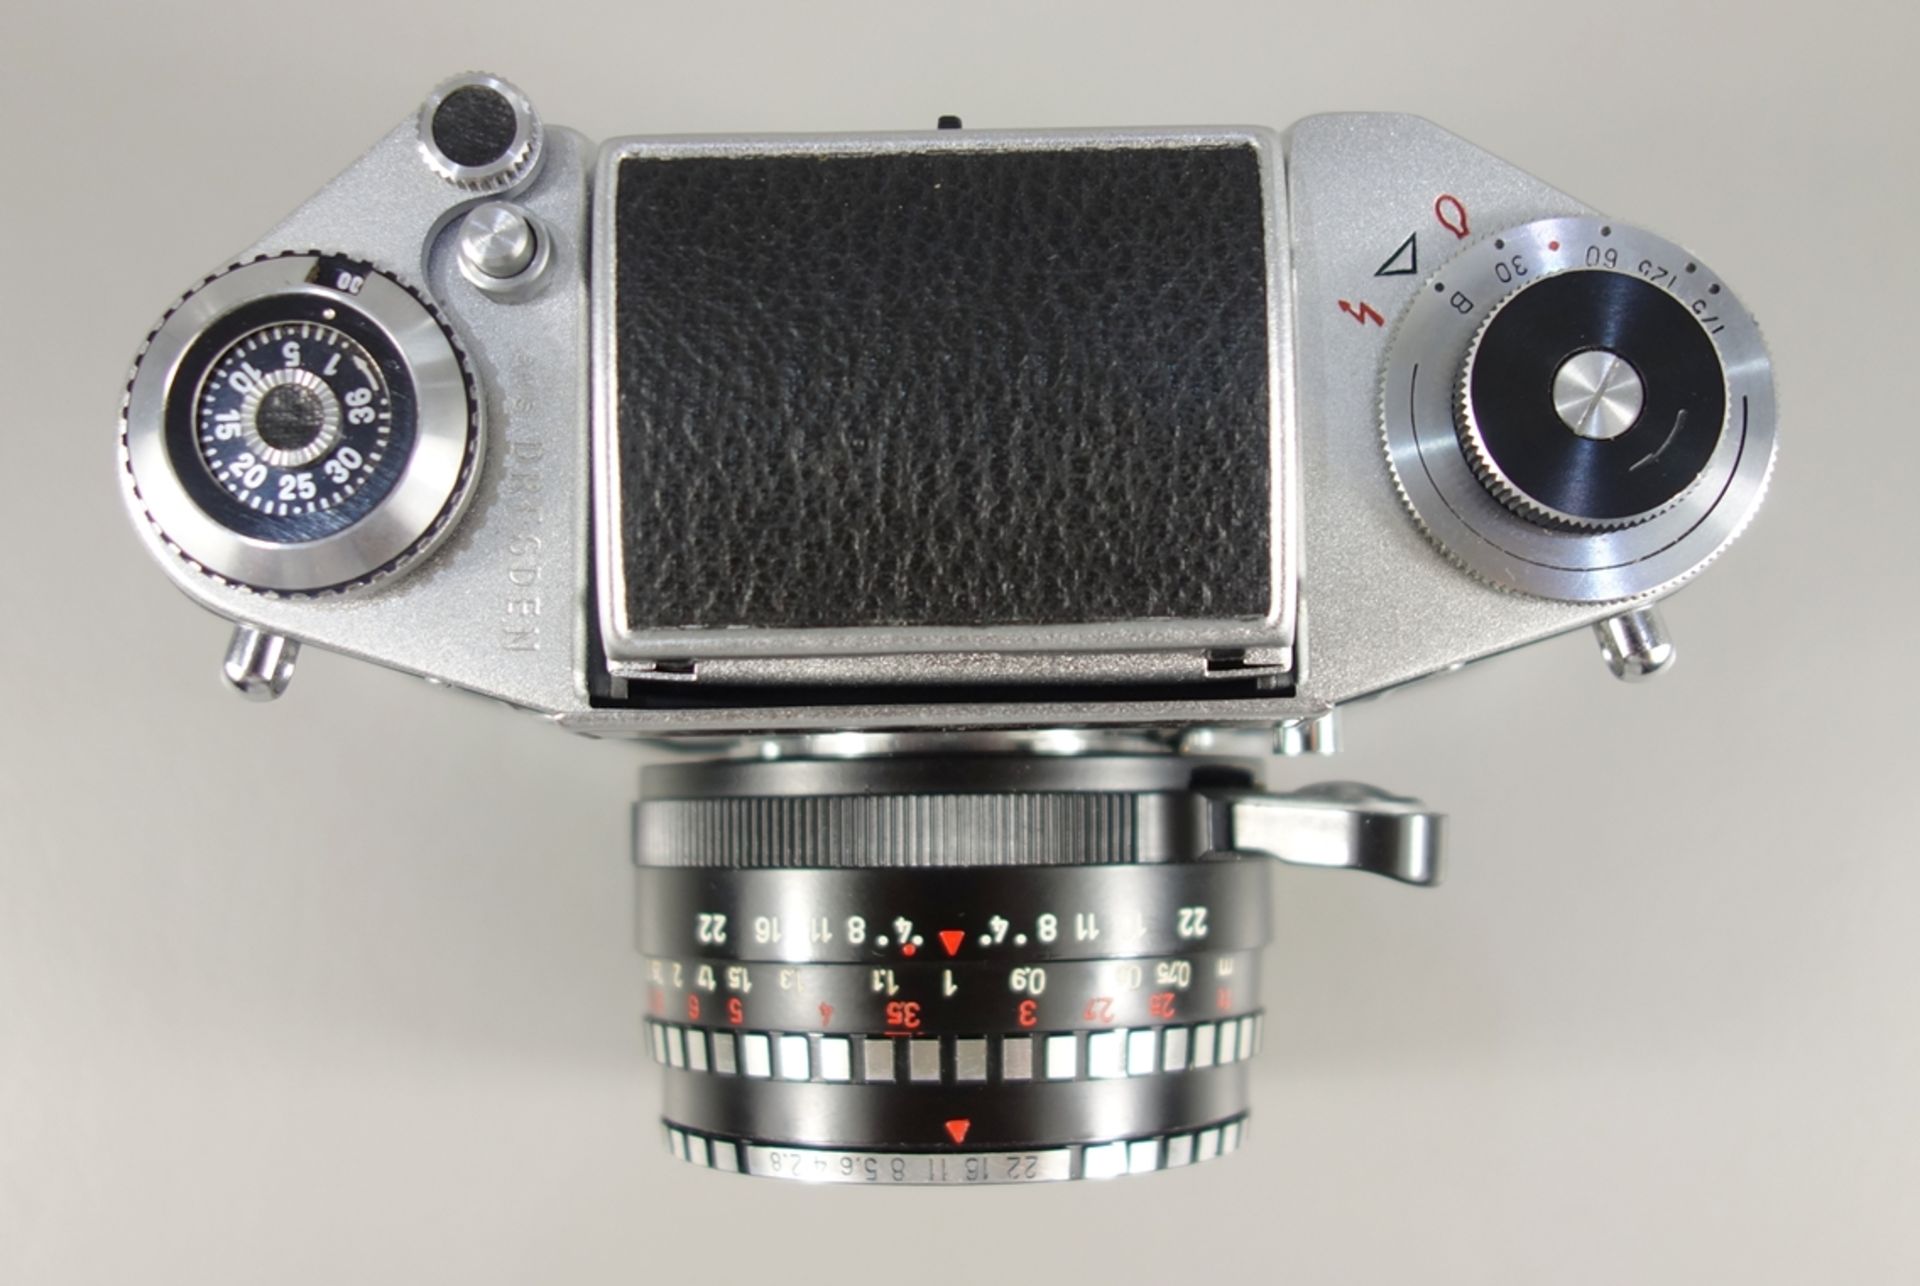 Exa Ia, Dresden, späte 1960er Jahre, Spiegelreflexkamera, Serien-Nr. 408042, mit Objektiv Meyer- - Bild 3 aus 5